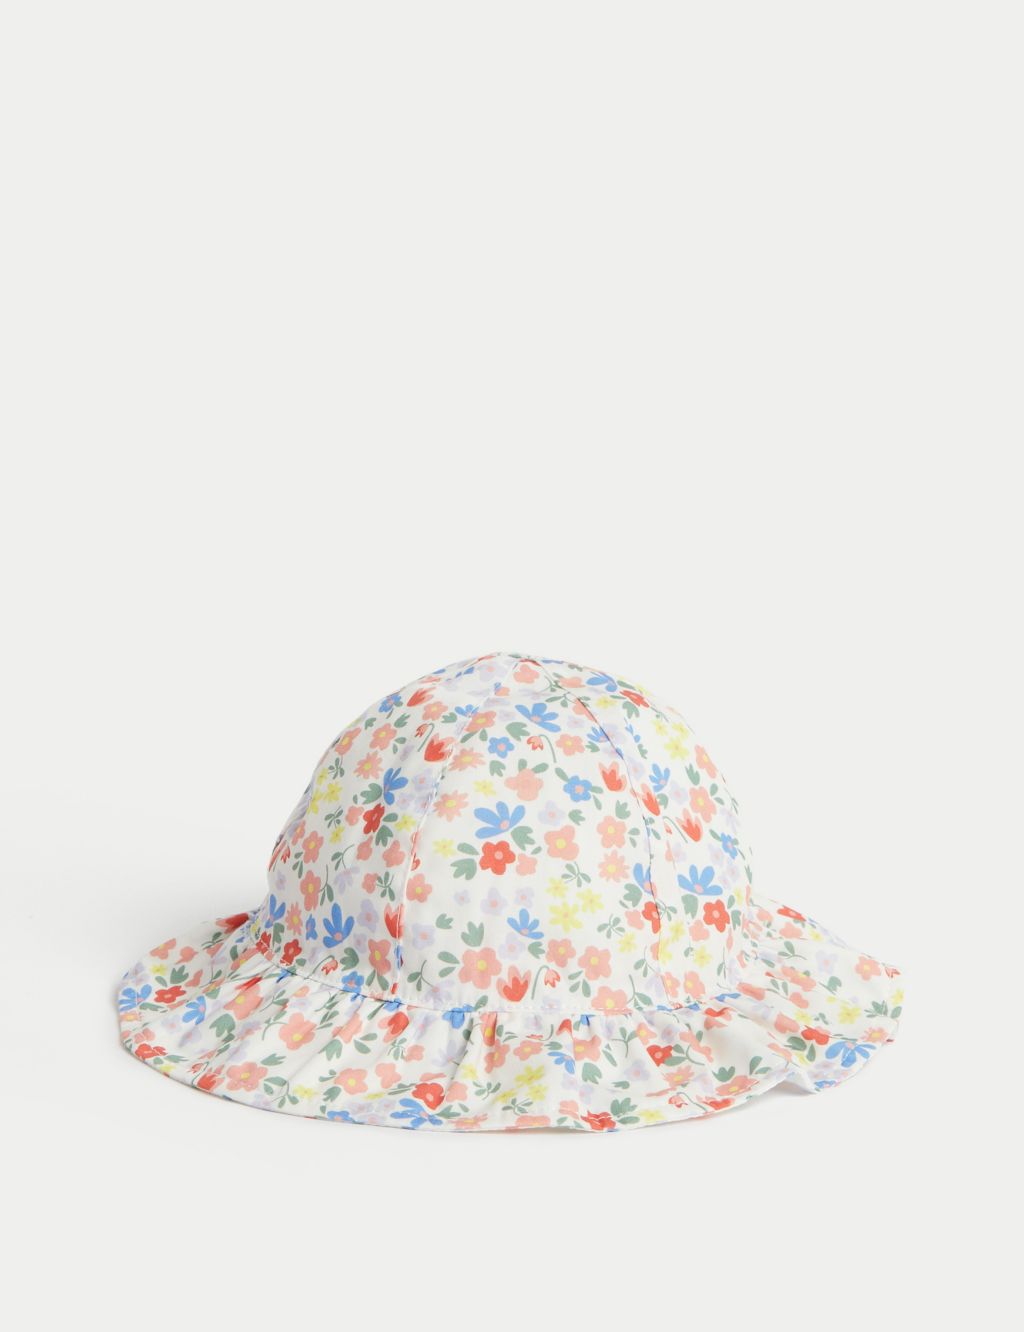 Kids' Pure Cotton Reversible Sun Hat (0-12 Mths) image 1